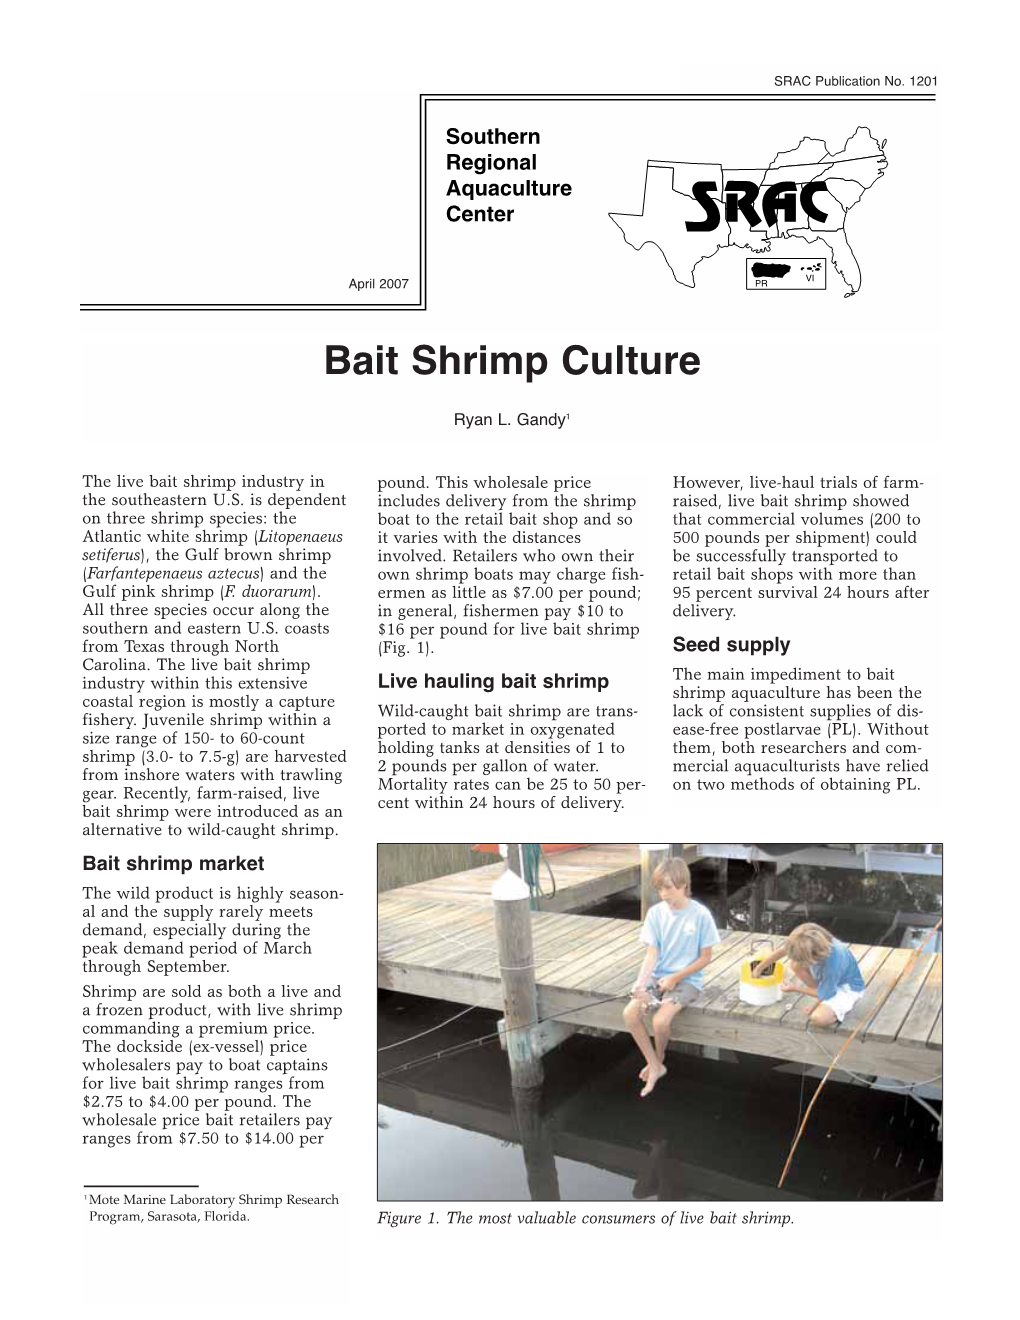 Bait Shrimp Culture